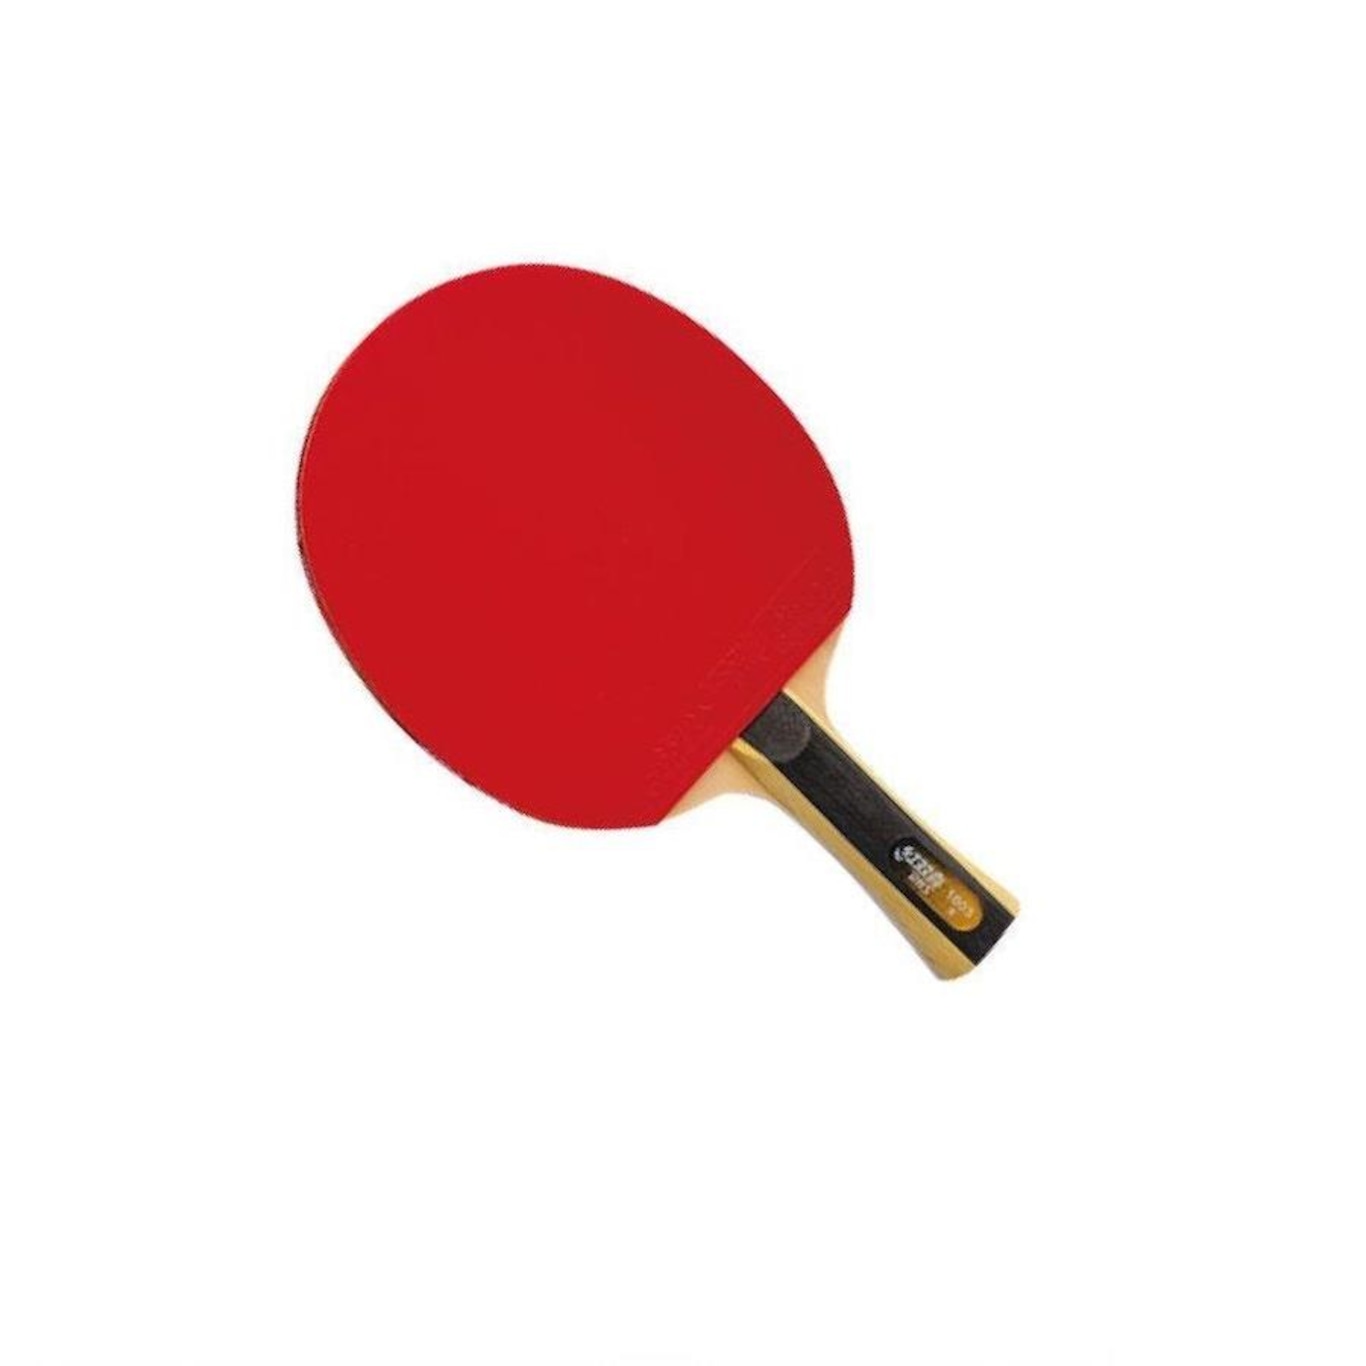 Mesa Ping-Pong Infantil 1003, Produtos